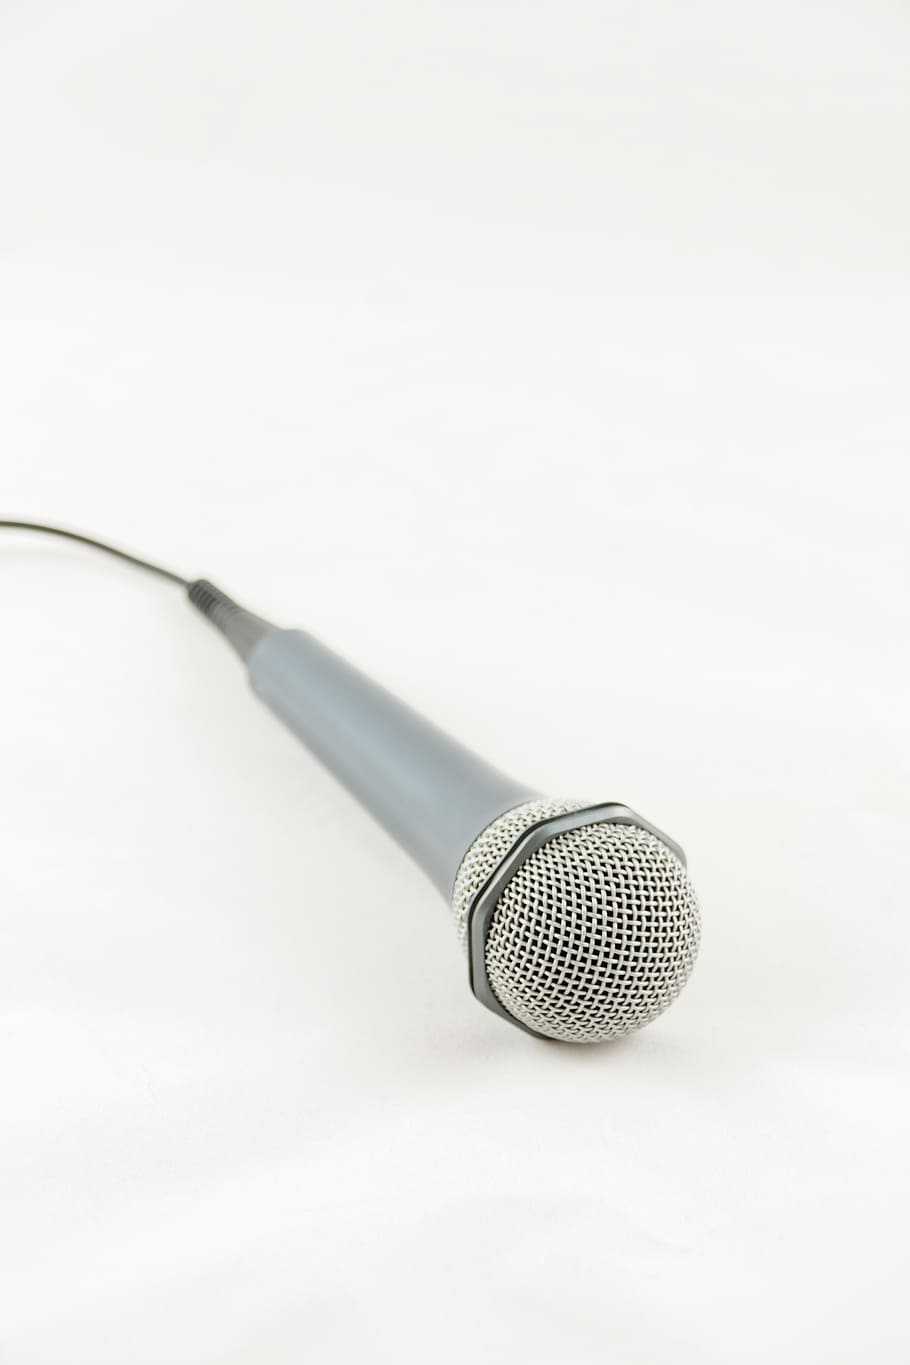 microfone, música, áudio, gravação, micro, som, único objeto, transmissão, equipamento, discurso